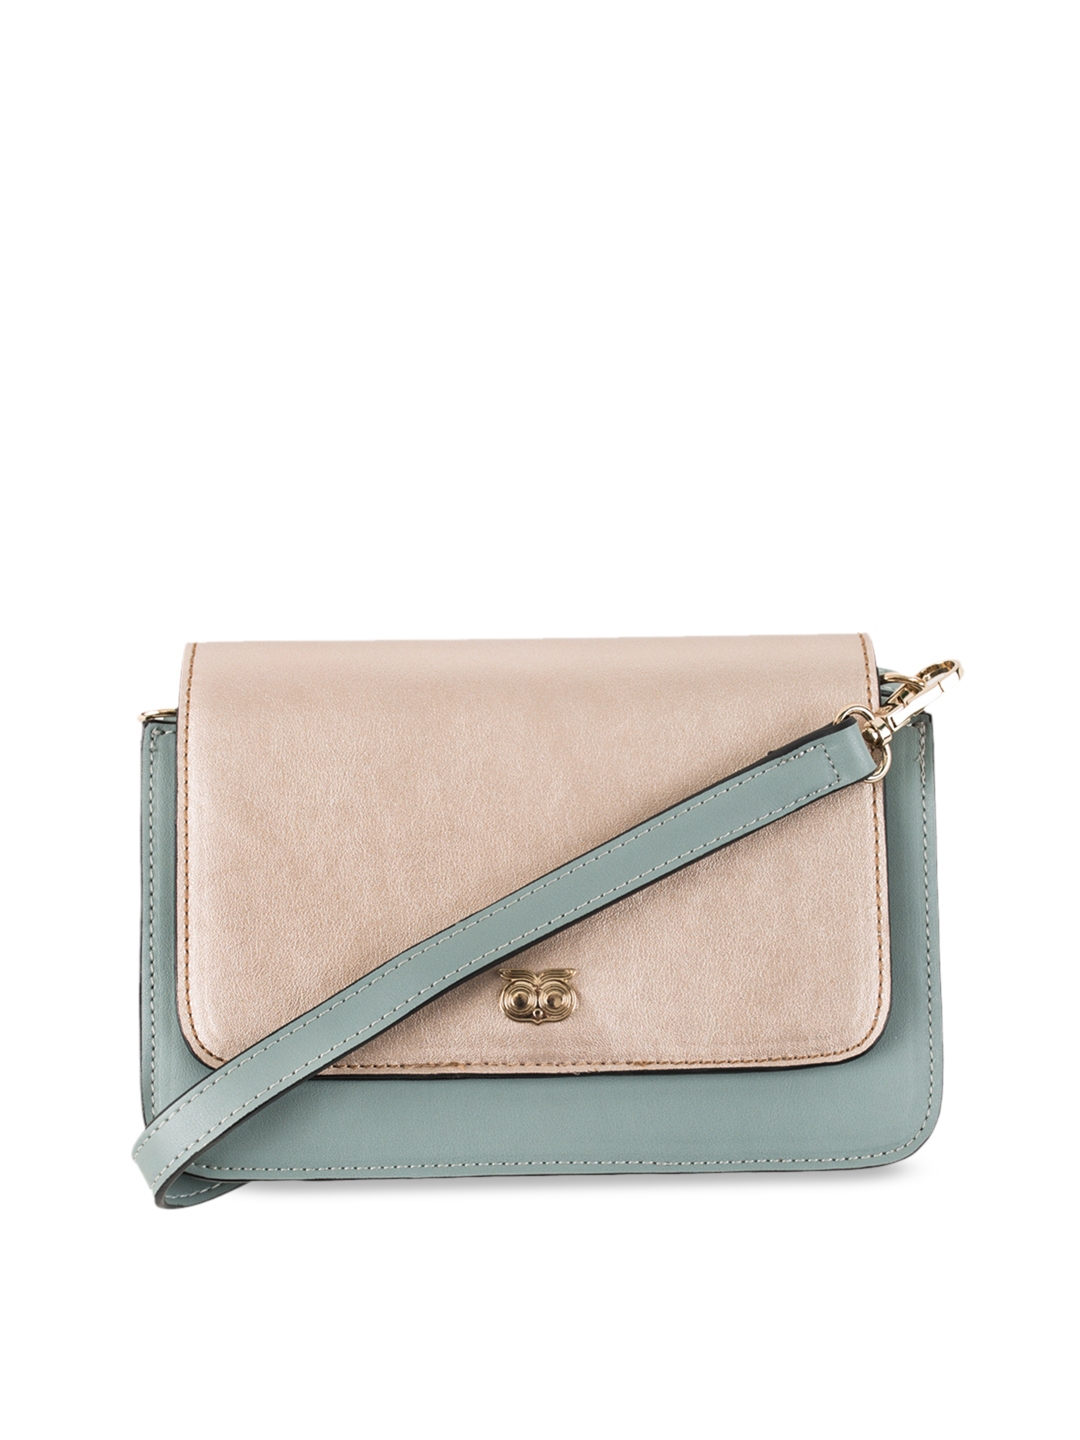 Buy Chumbak Blue & Beige Colourblocked Sling Bag - Handbags for Women ...